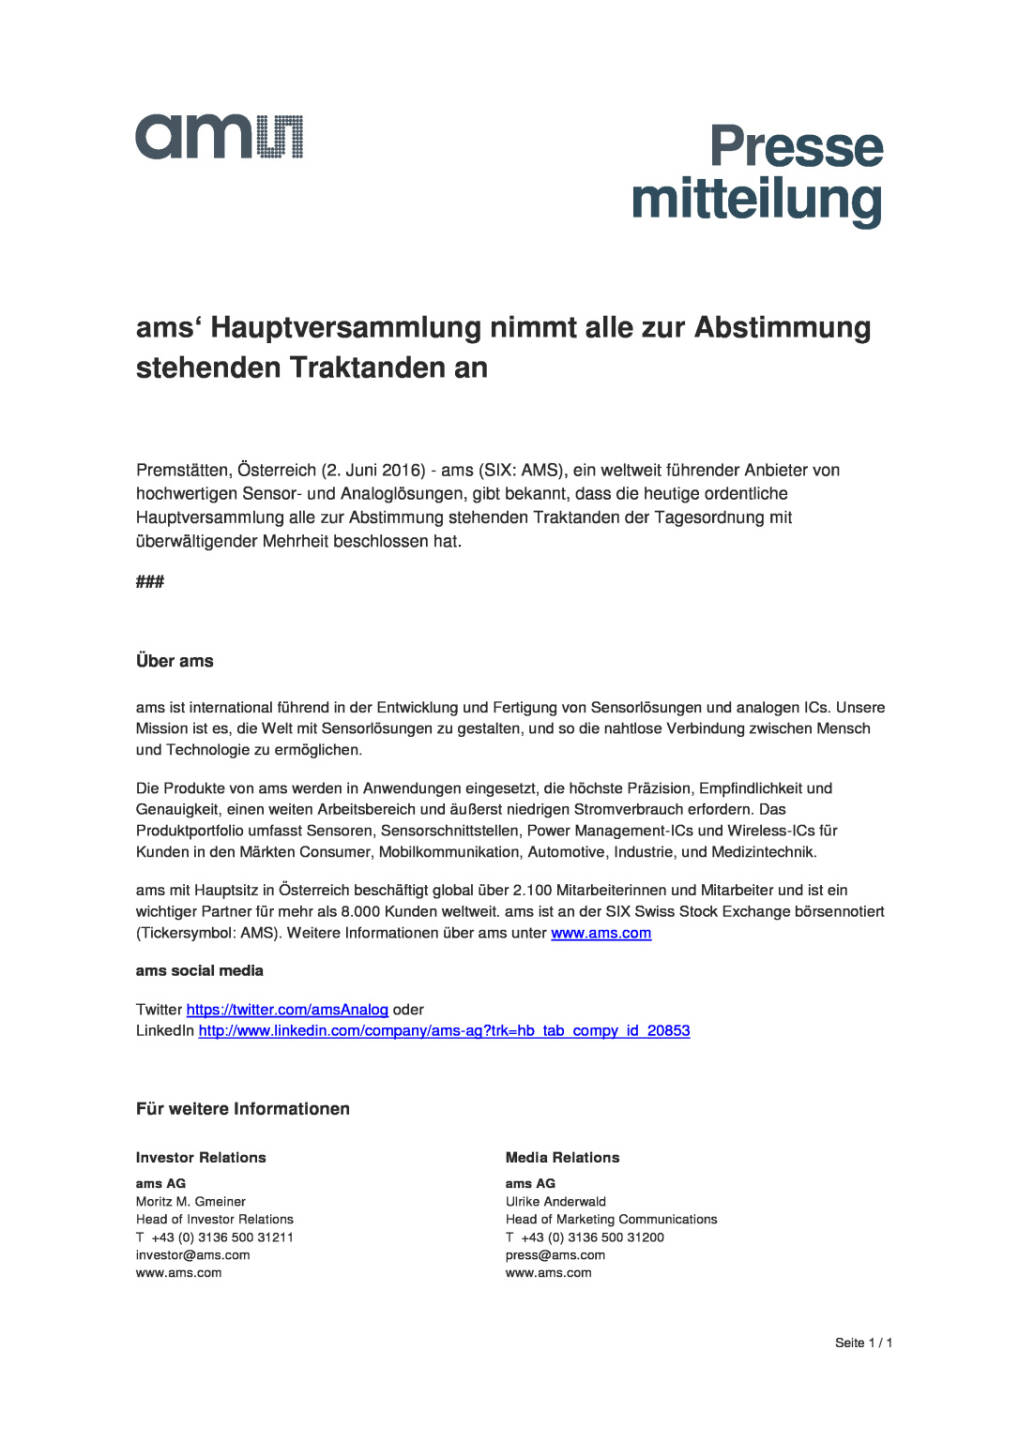 ams‘ AG: Beschlüsse Hauptversammlung, Seite 1/1, komplettes Dokument unter http://boerse-social.com/static/uploads/file_1163_ams_ag_beschlusse_hauptversammlung.pdf